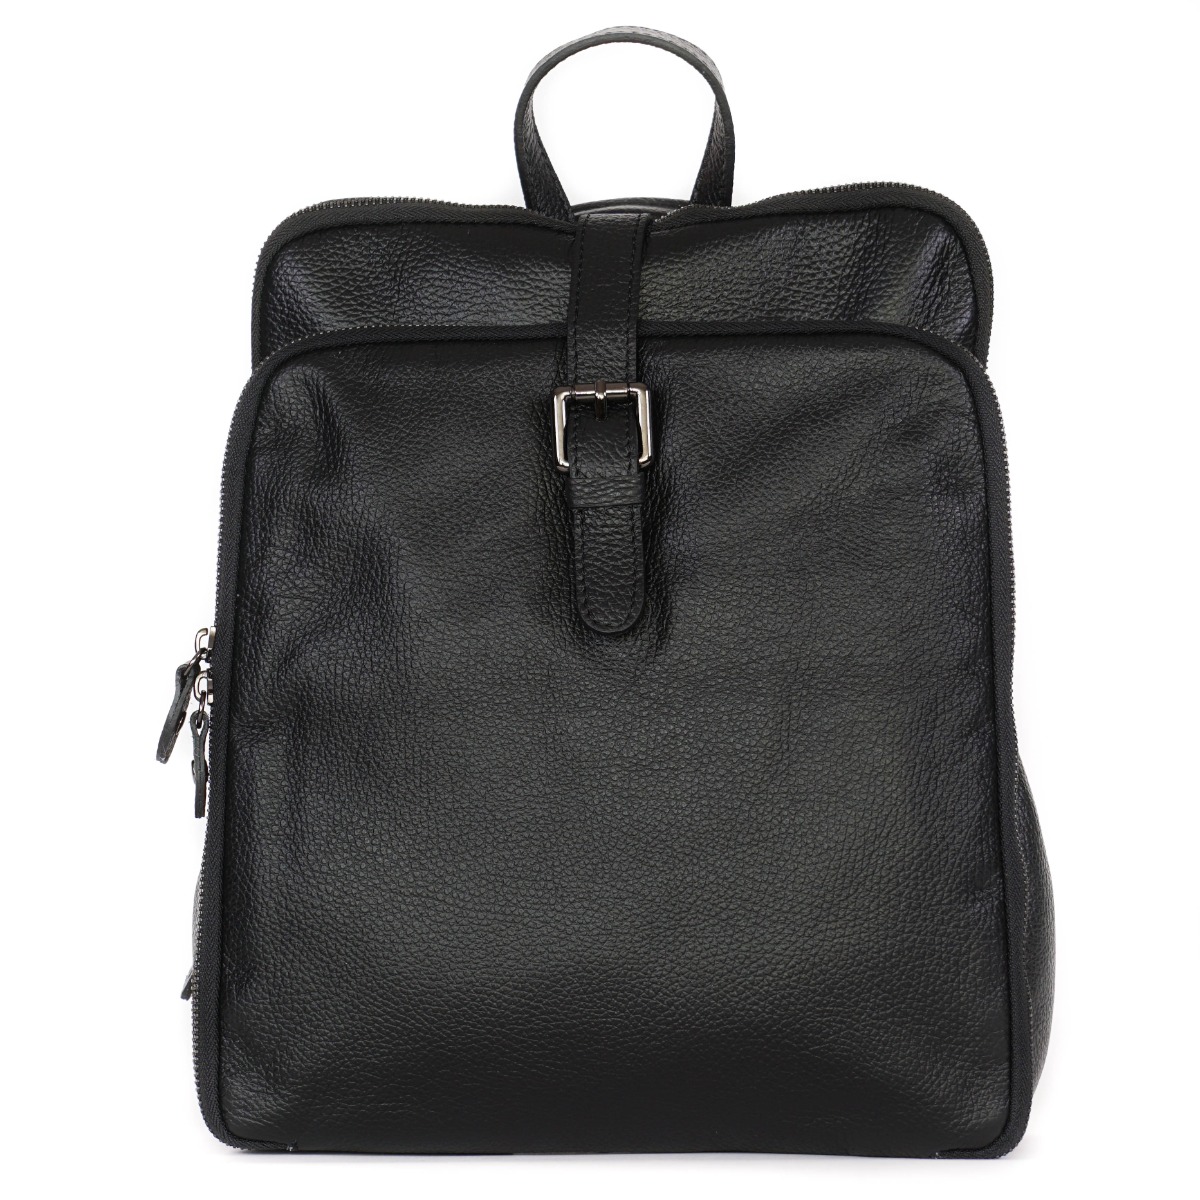 Black elegant convertible backpack bag for everyday